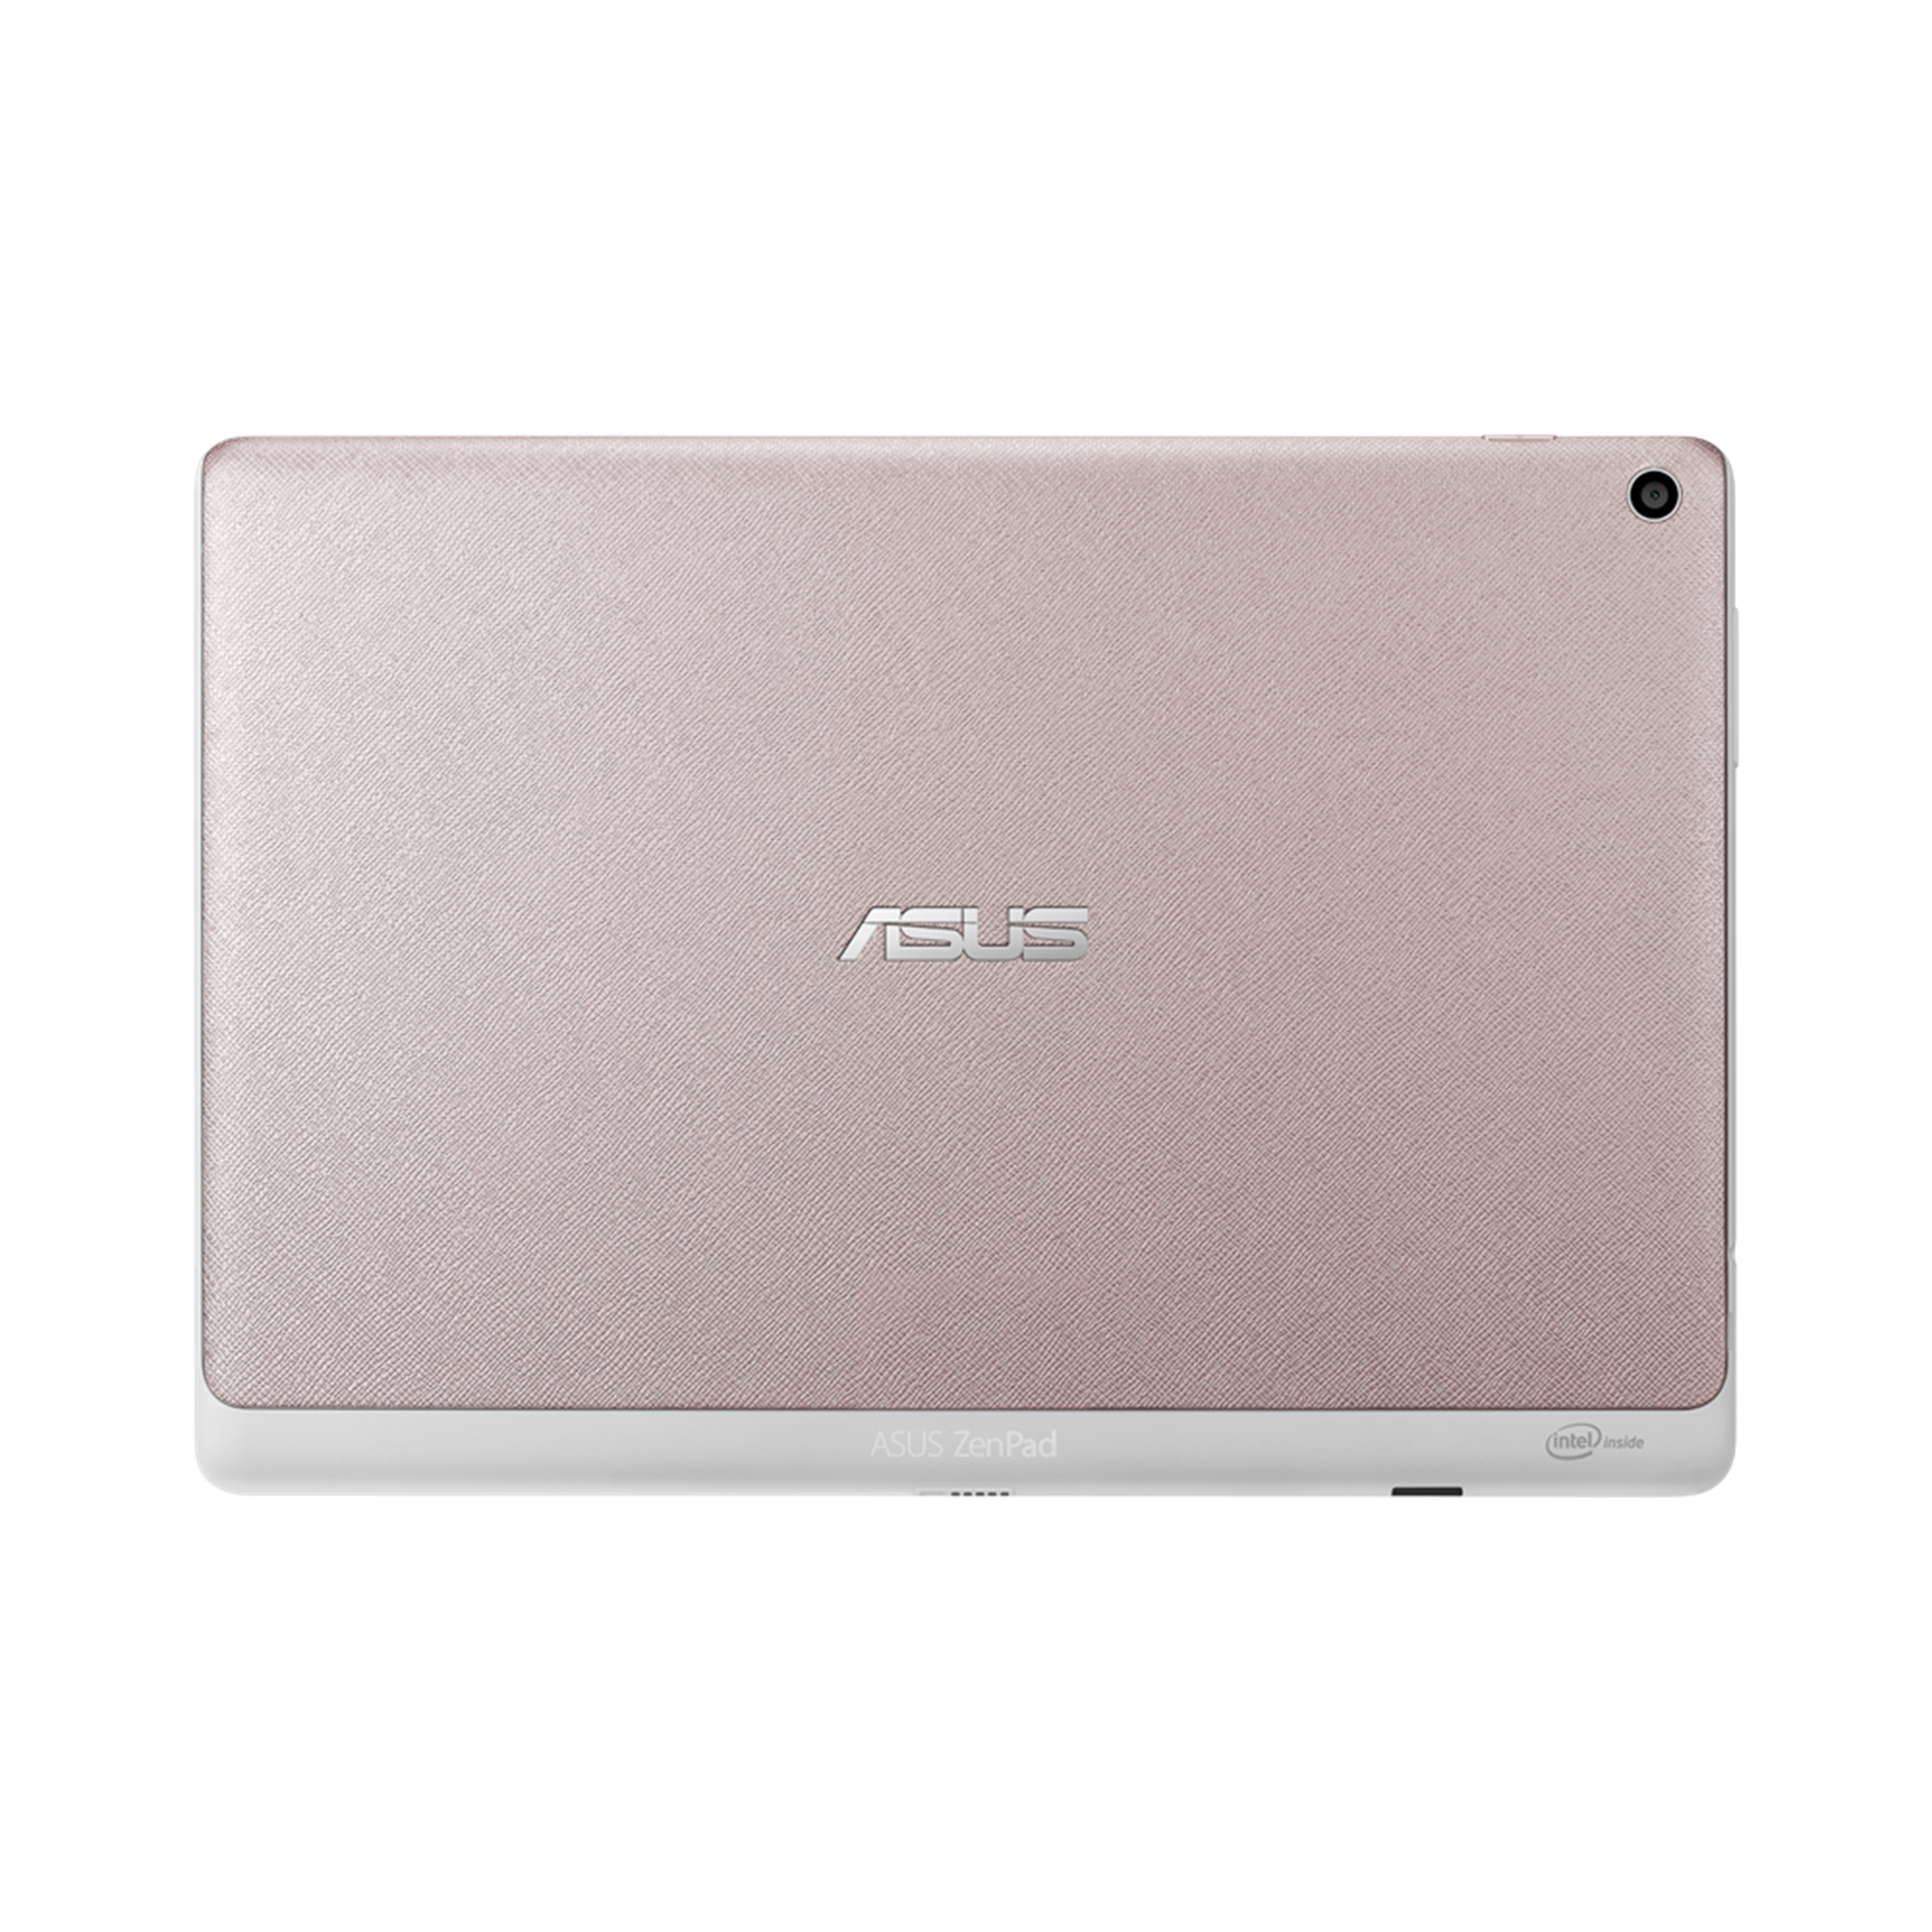 ASUS Zenpad10 z300cl 10インチ タブレットSIMフリー